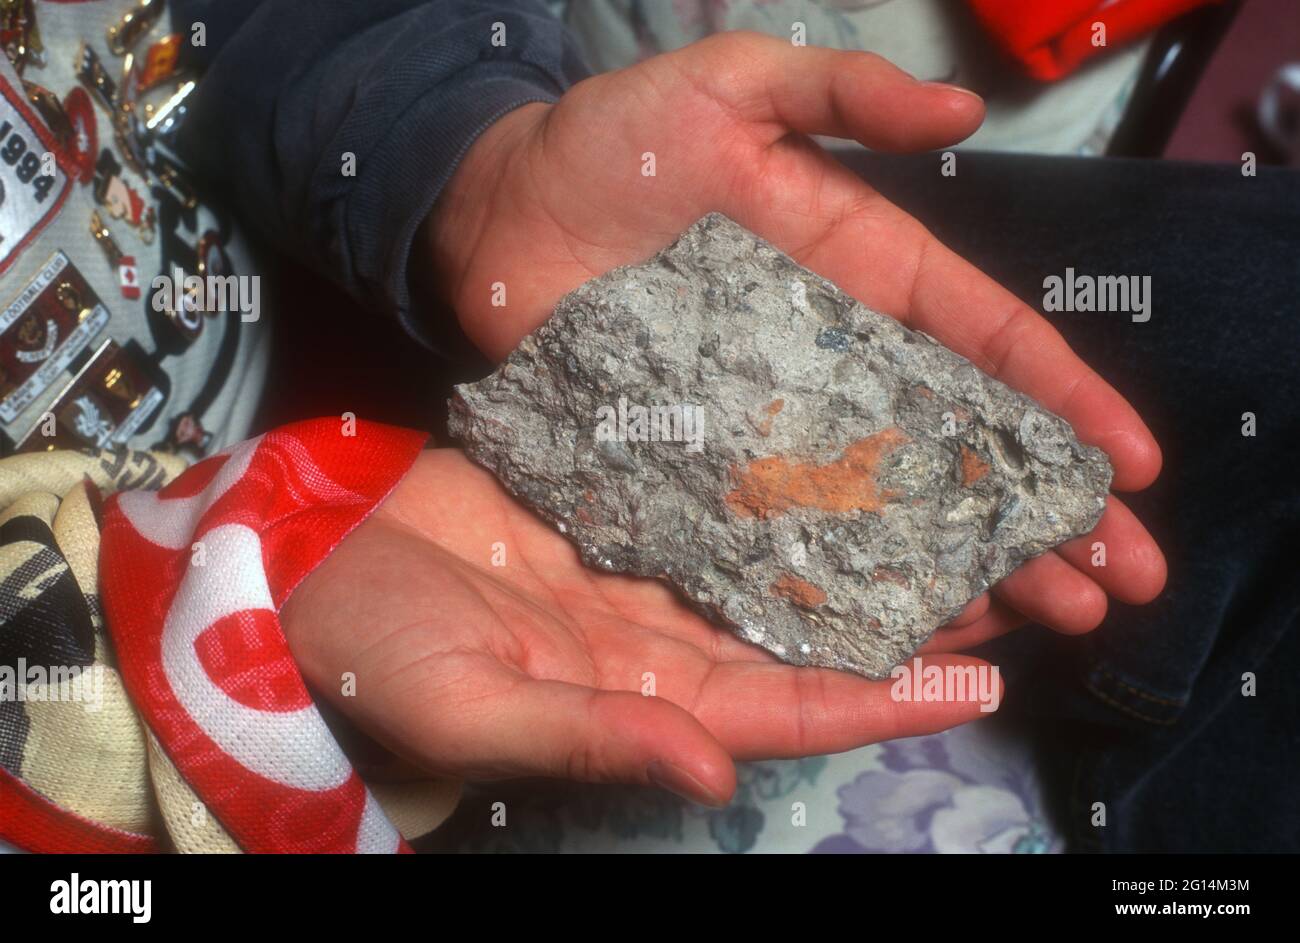 Un supporter de Liverpool tenant un morceau de roche de la base originale d'Anfield Kop Banque D'Images